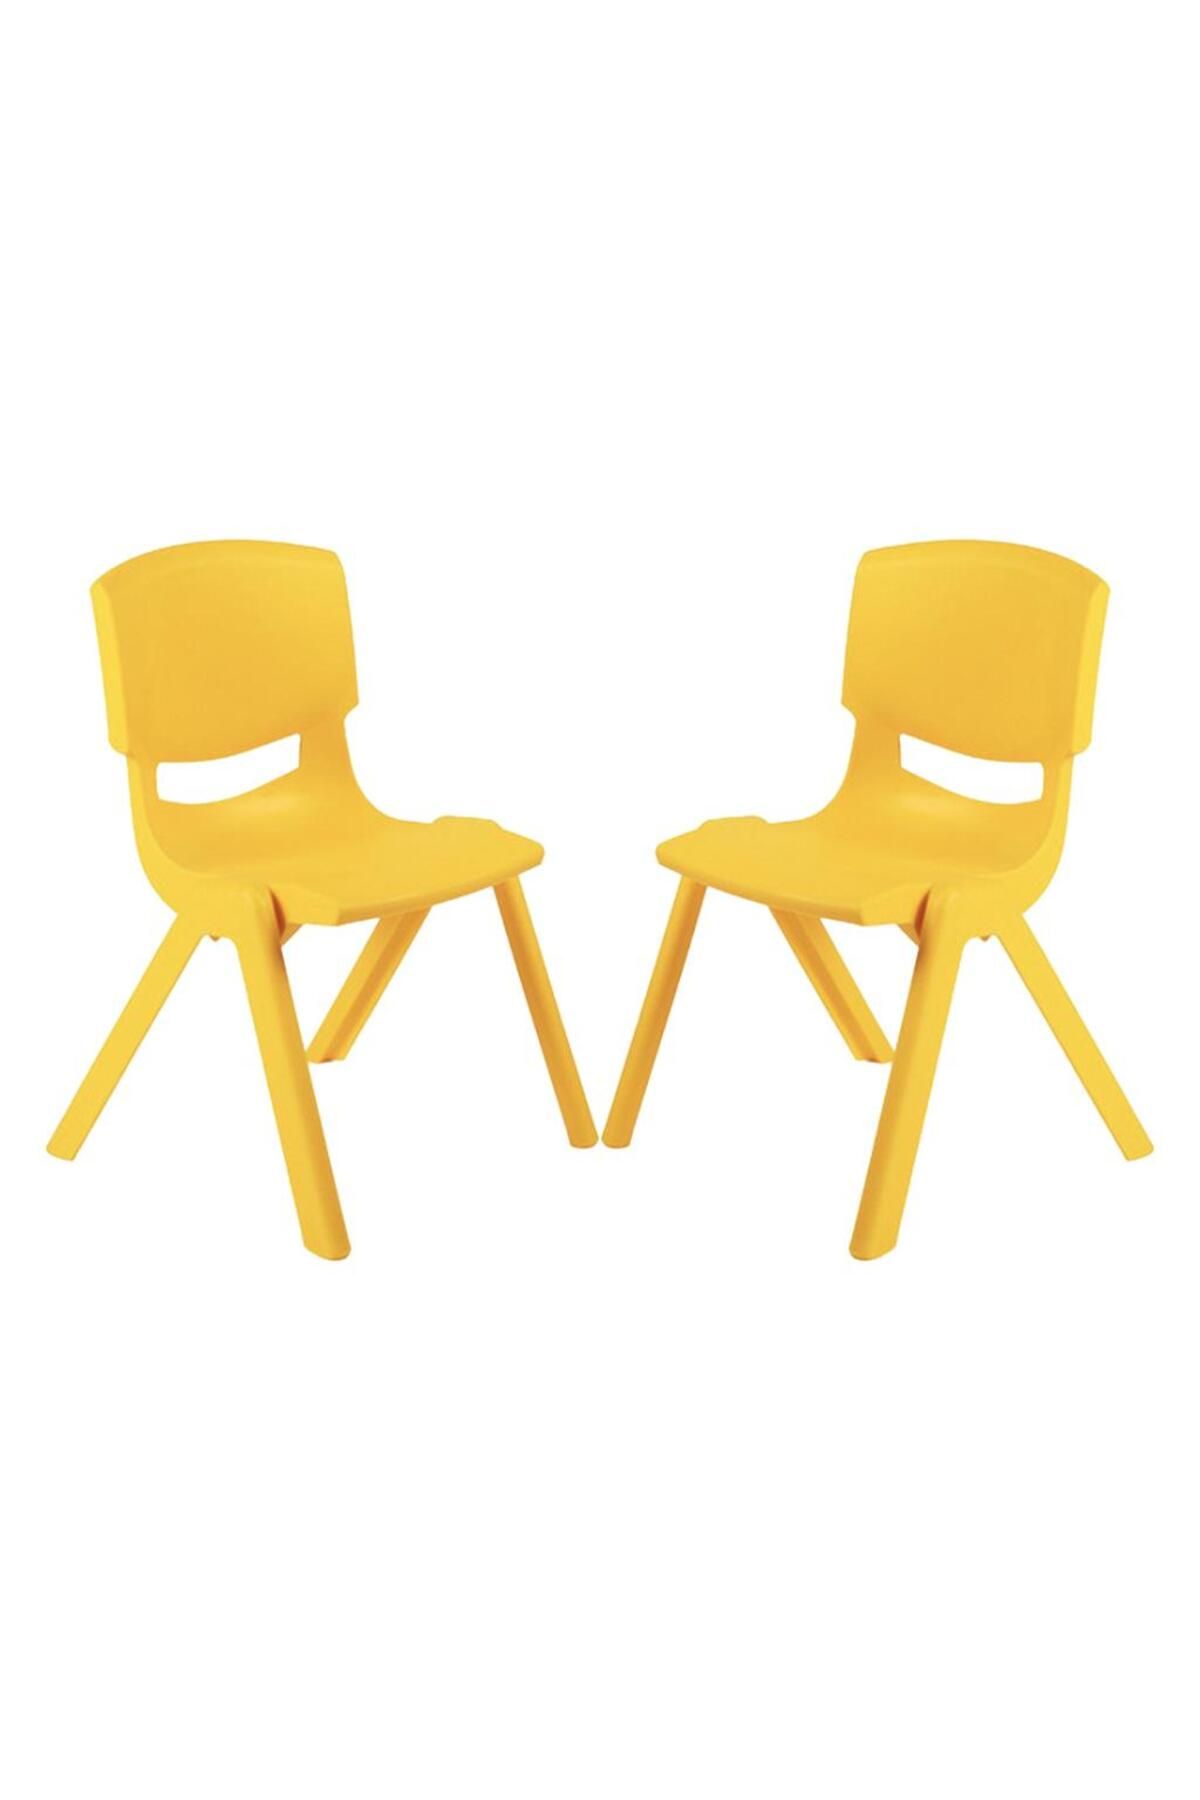 Fiore Büyük Şirin Çocuk Sandalyesi Sarı 2li Paket 3-7 Yaş İçin